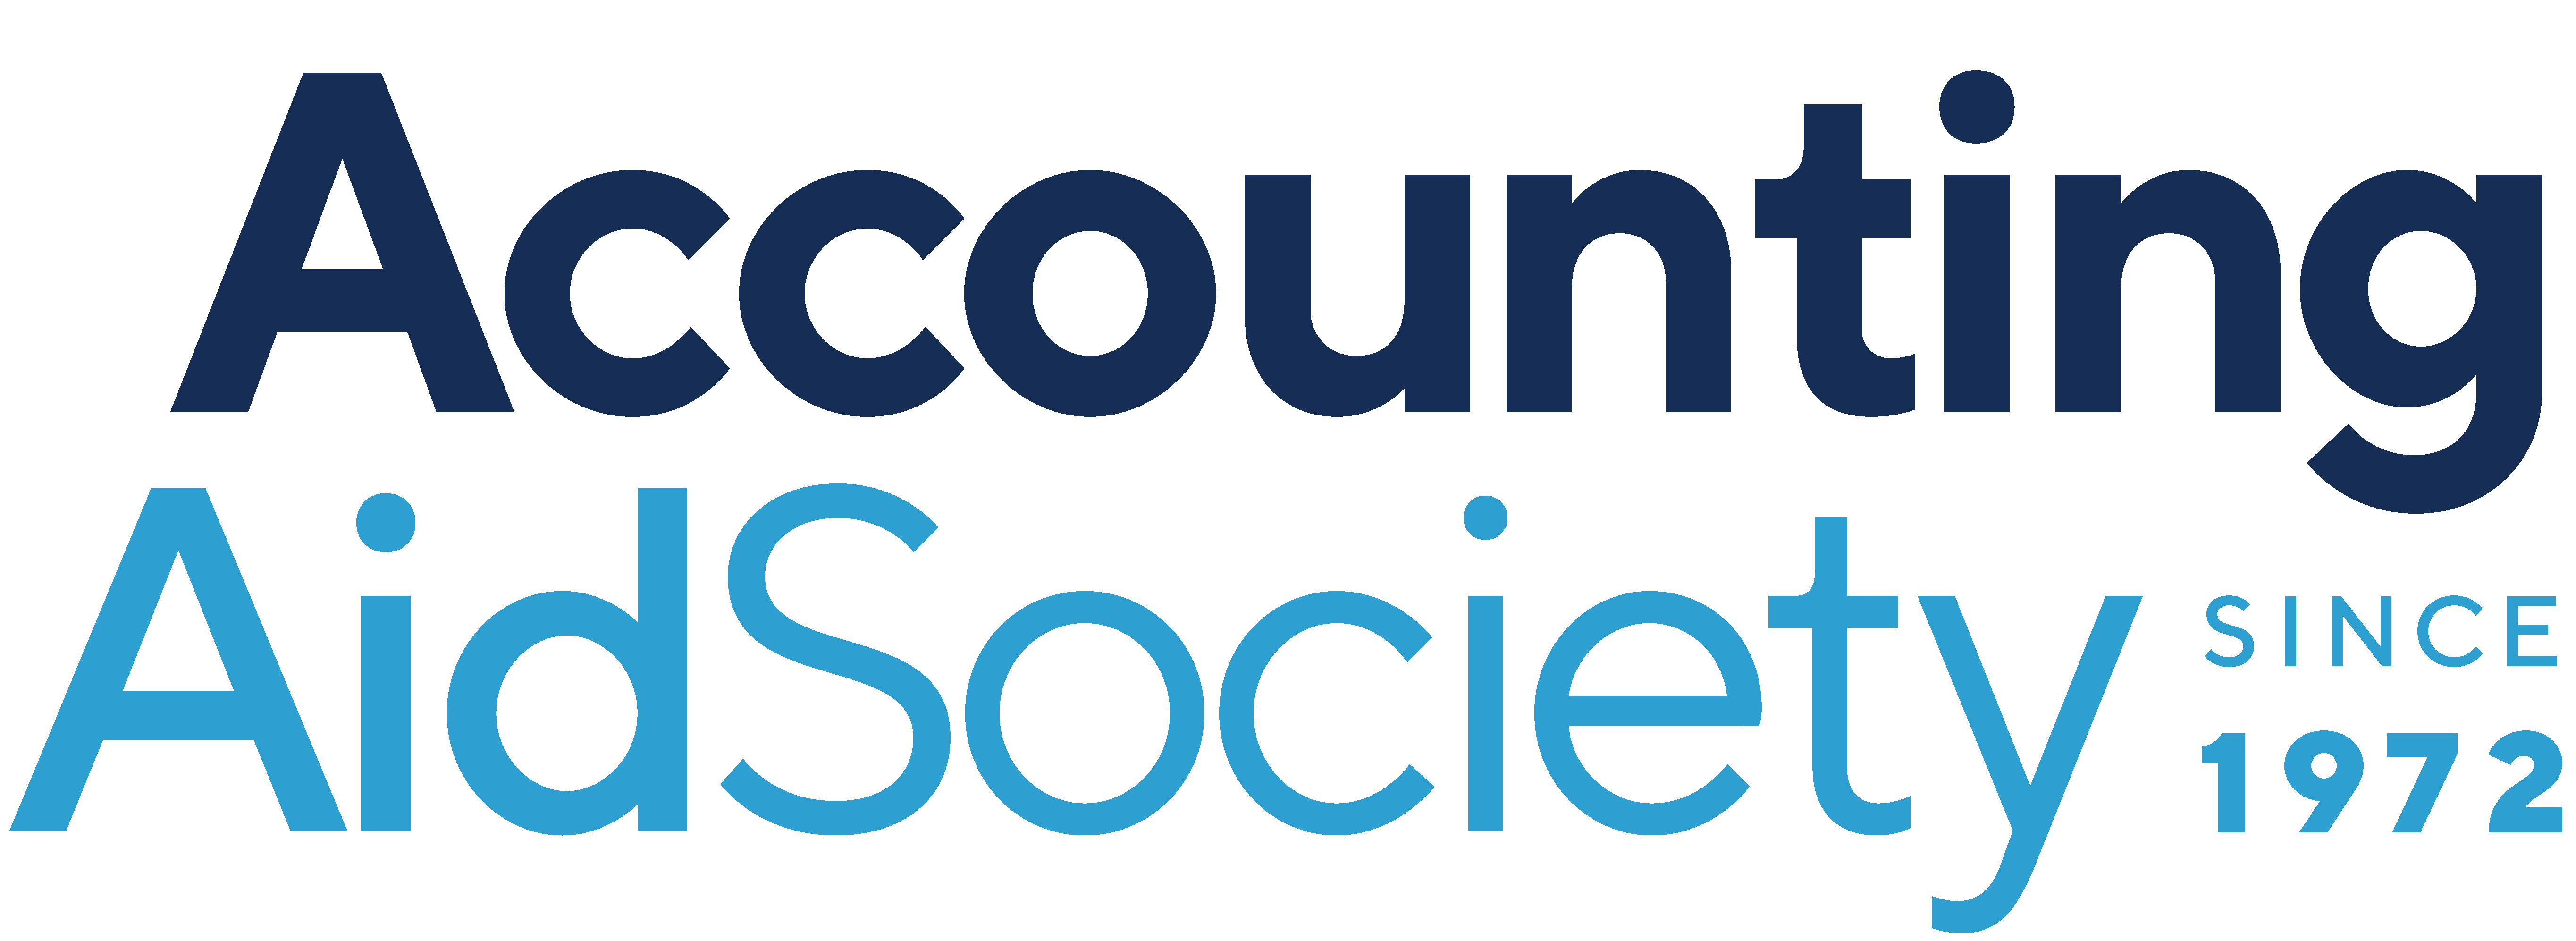 Accounting Aid Society